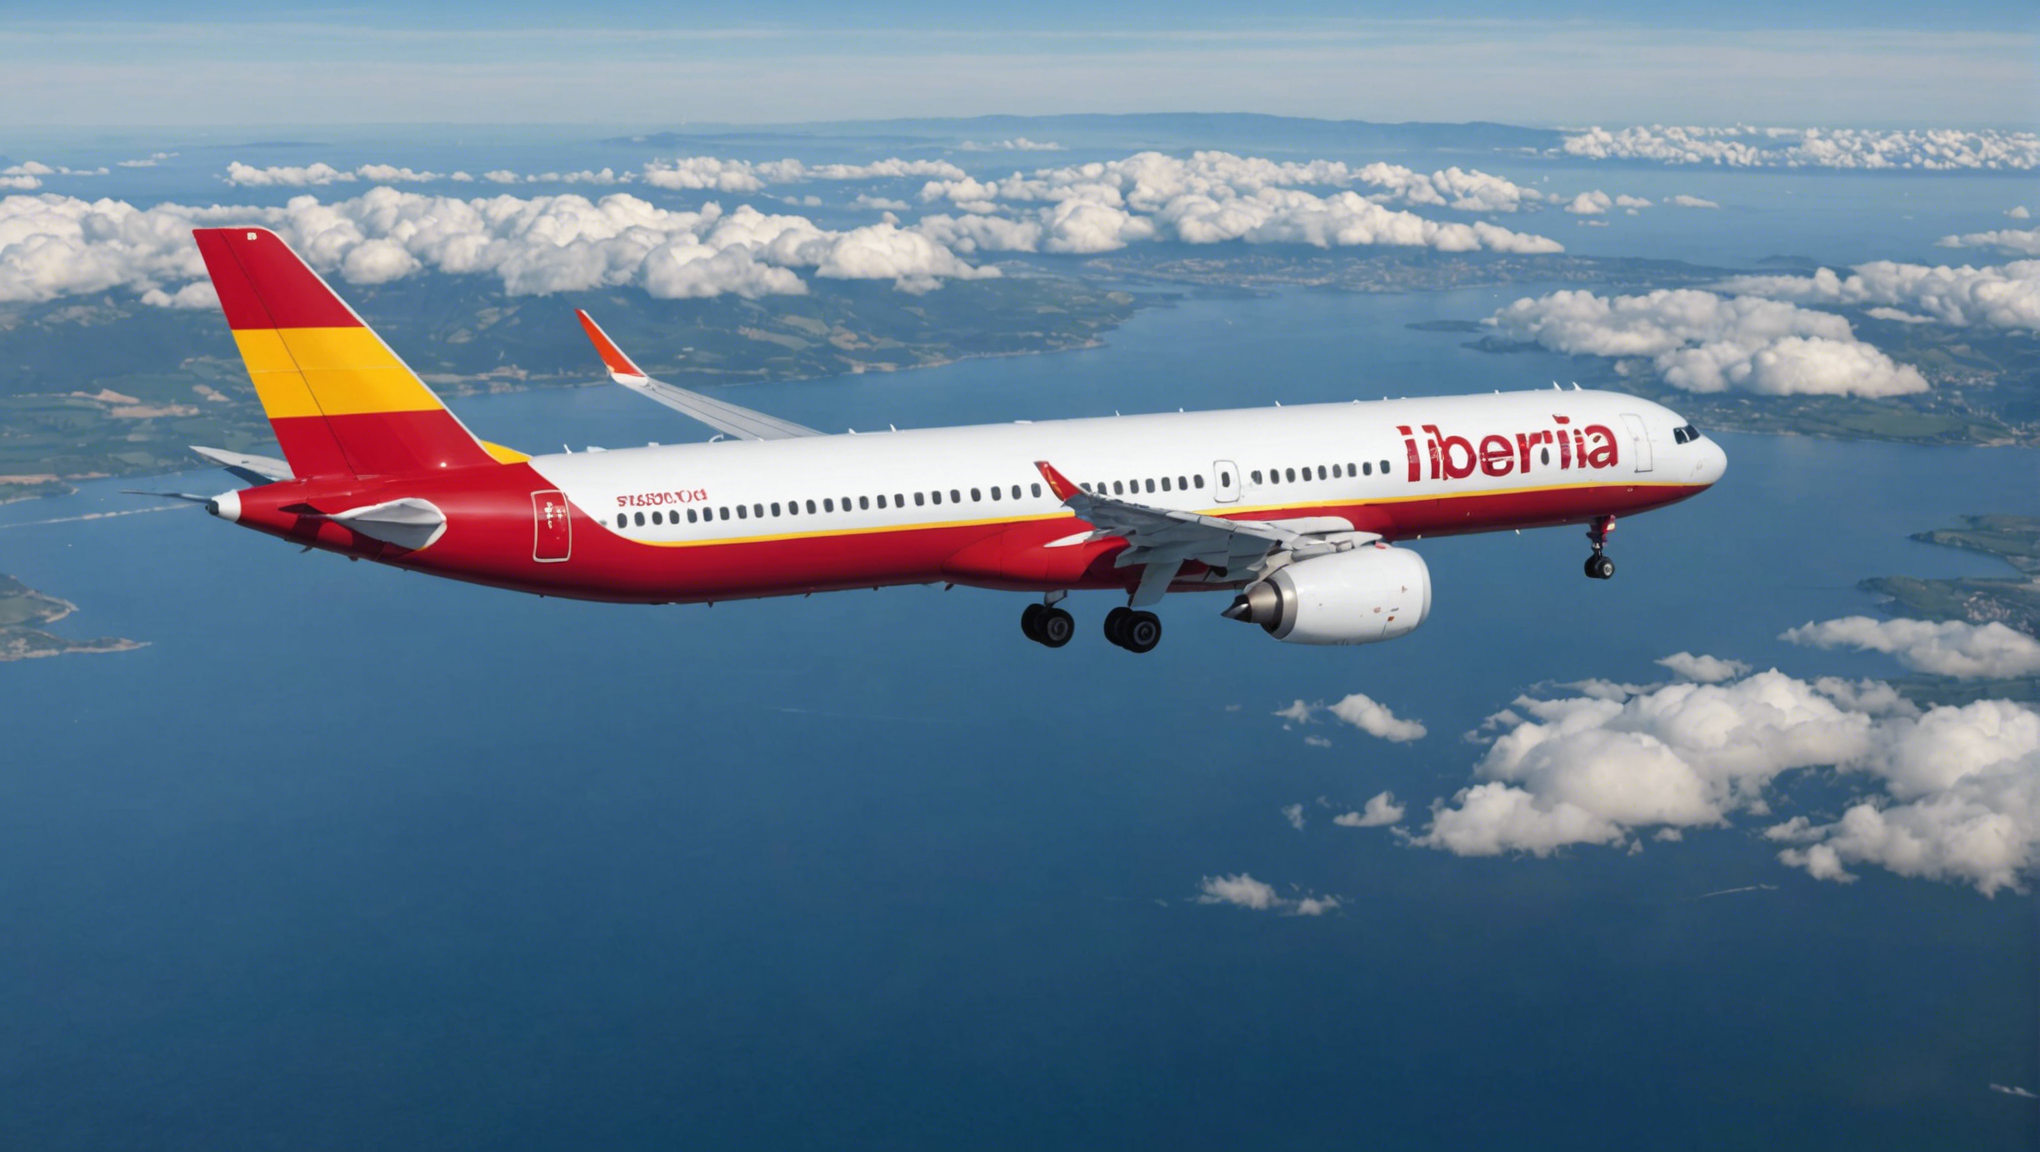 découvrez comment réserver vos vols transatlantiques en airbus a321xlr avec iberia, la compagnie aérienne leader en europe.